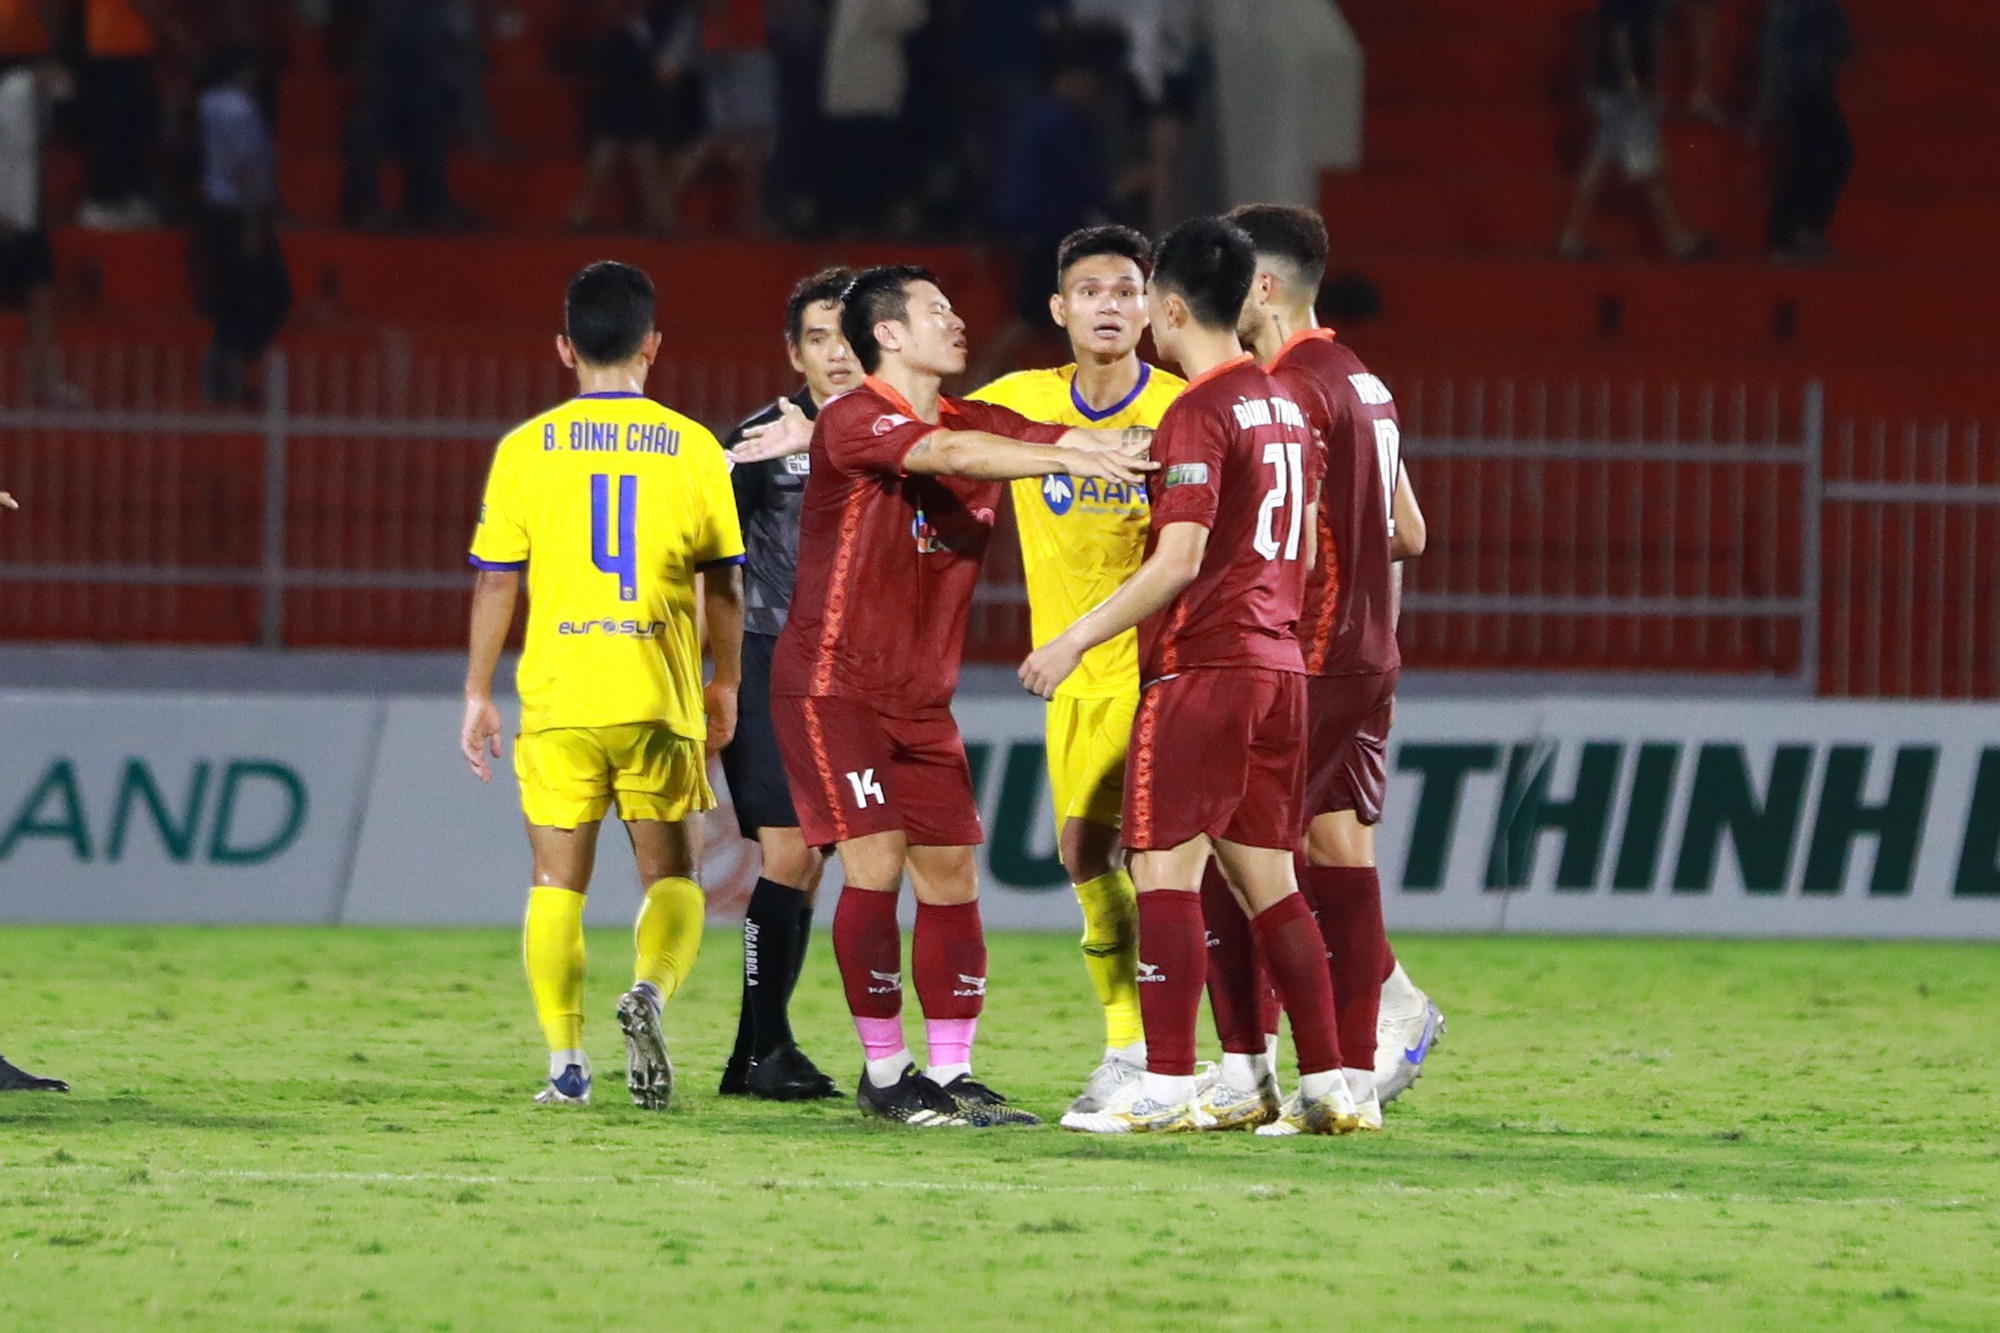 Bình Định thắng SLNA: Văn Lâm chơi xuất sắc, Đình Trọng và Xuân Mạnh to tiếng sau trận - Ảnh 6.